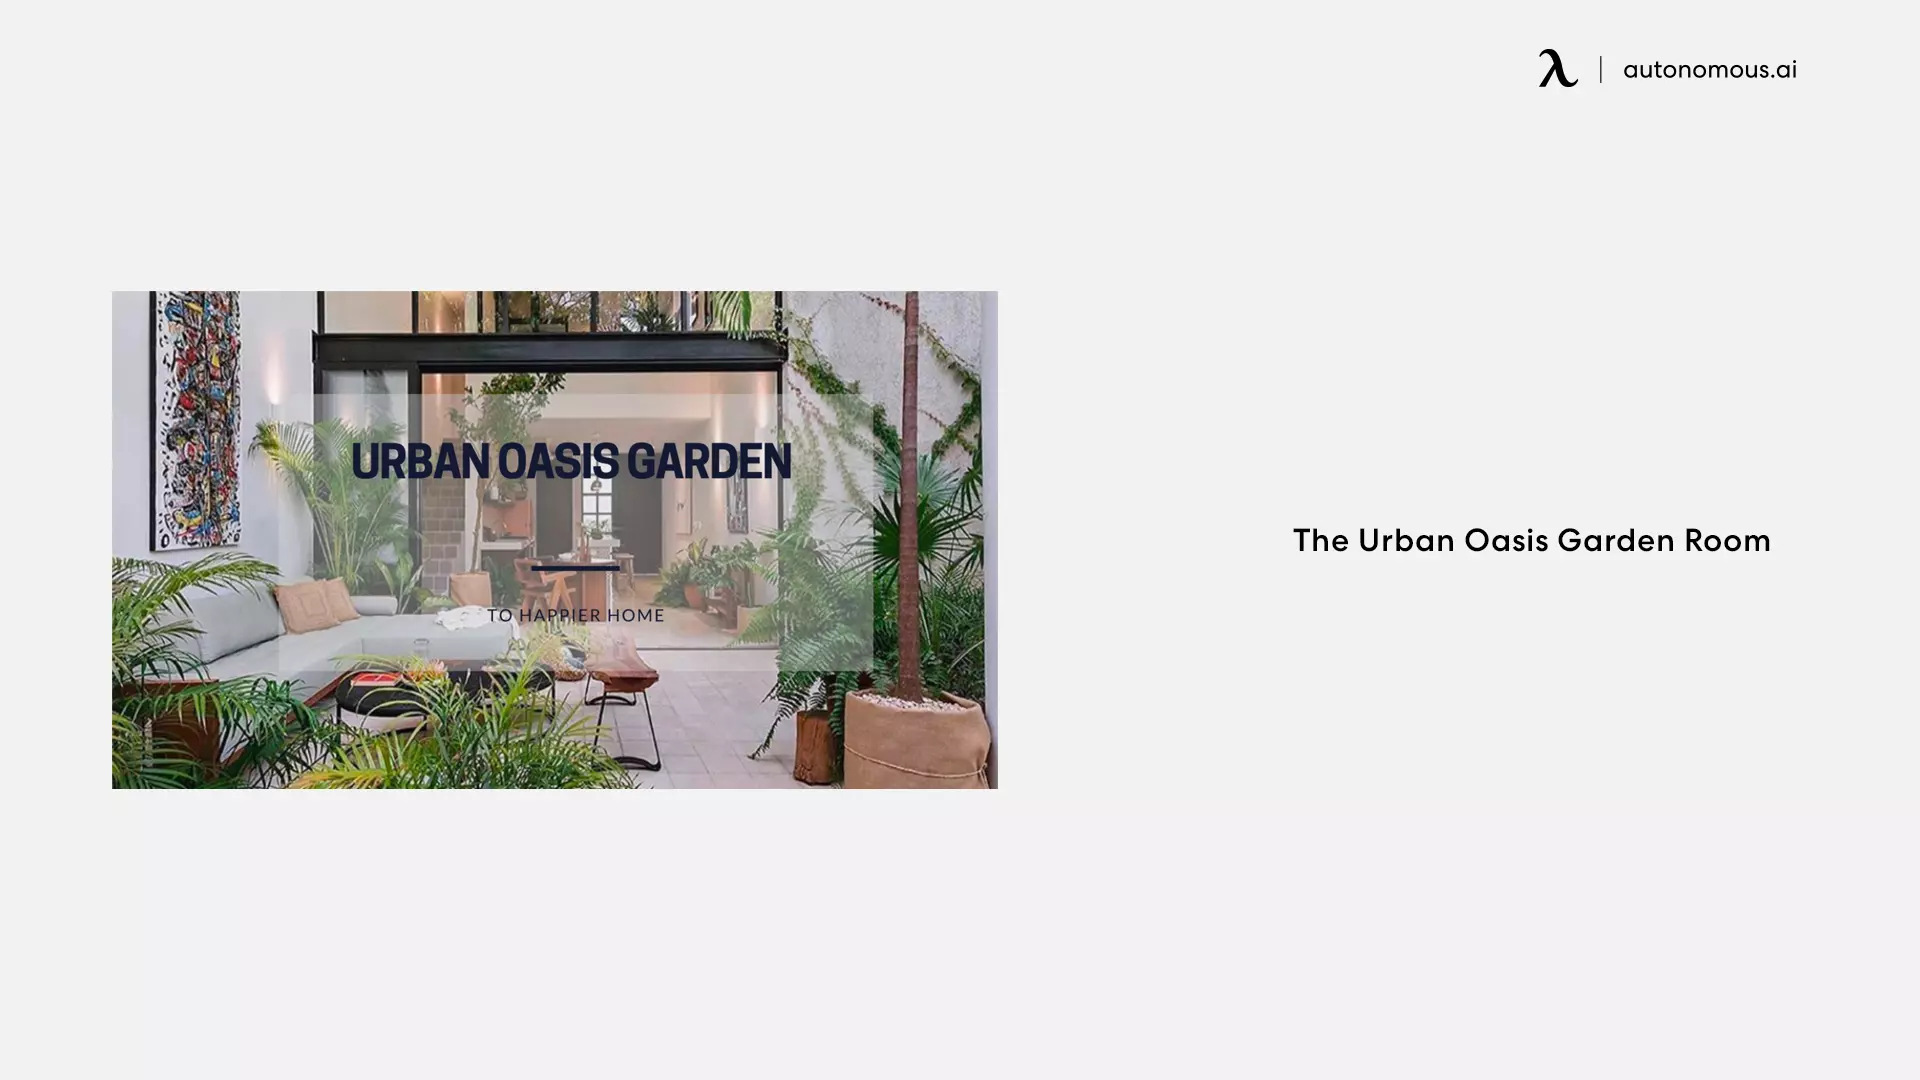 The Urban Oasis Garden Room